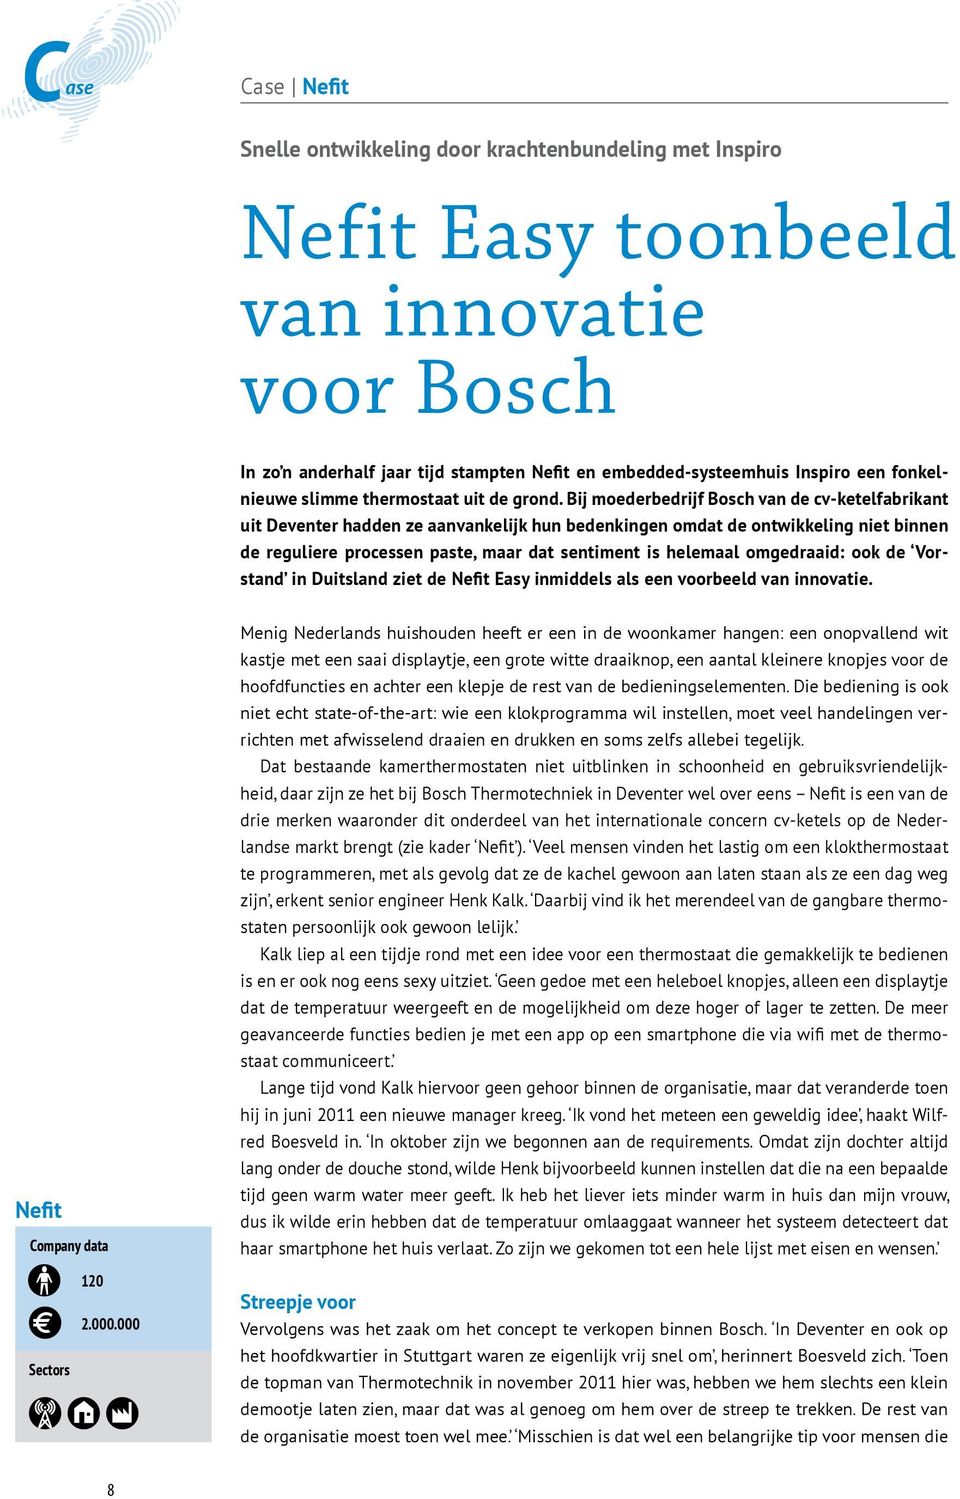 Bij moederbedrijf Bosch van de cv-ketelfabrikant uit Deventer hadden ze aanvankelijk hun bedenkingen omdat de ontwikkeling niet binnen de reguliere processen paste, maar dat sentiment is helemaal